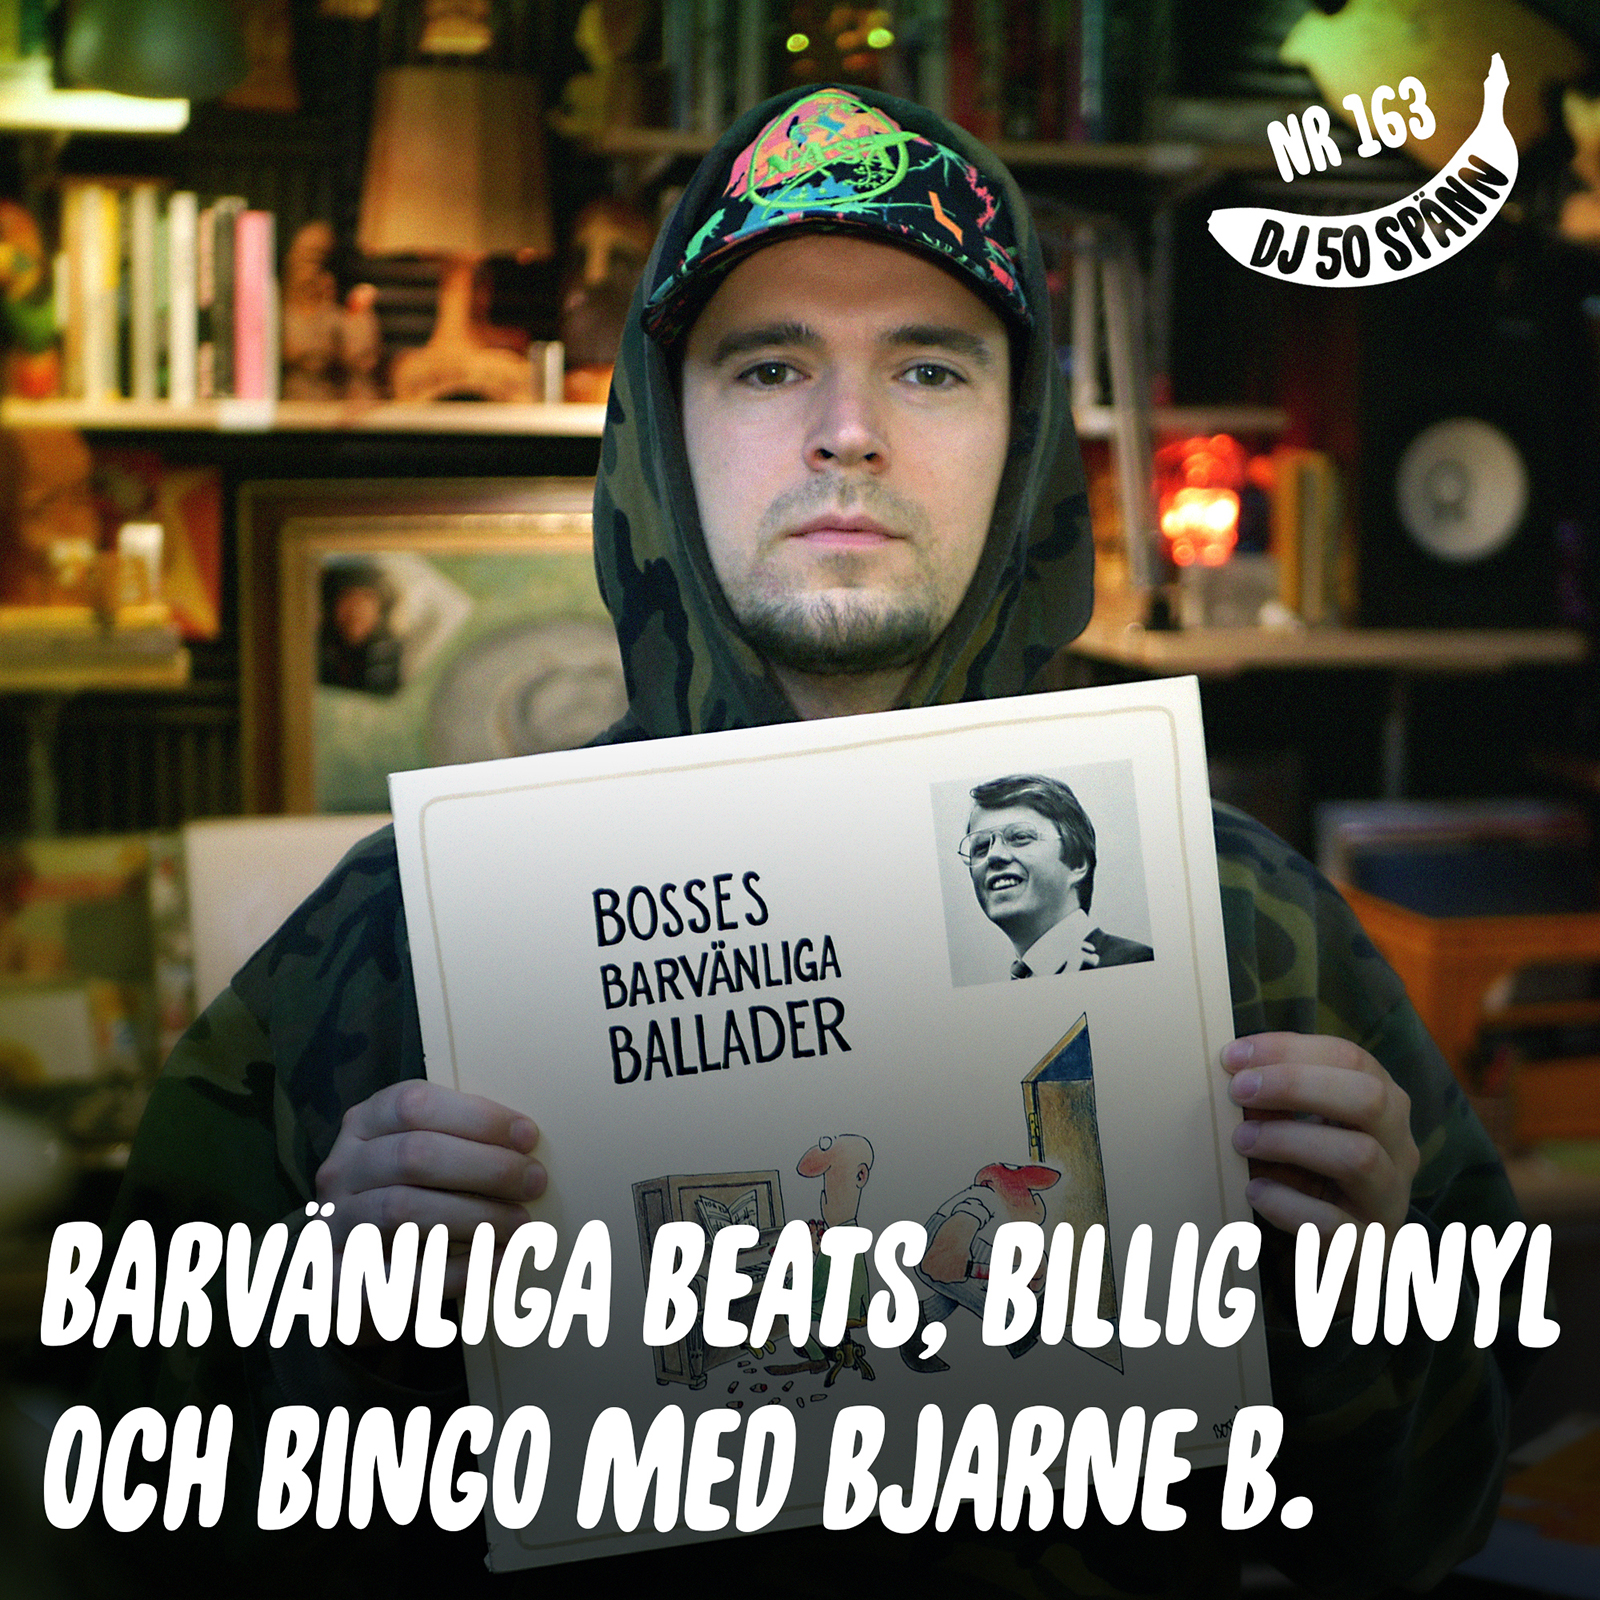 Bjarne B bjuder på barvänliga beats, bingo och billig vinyl